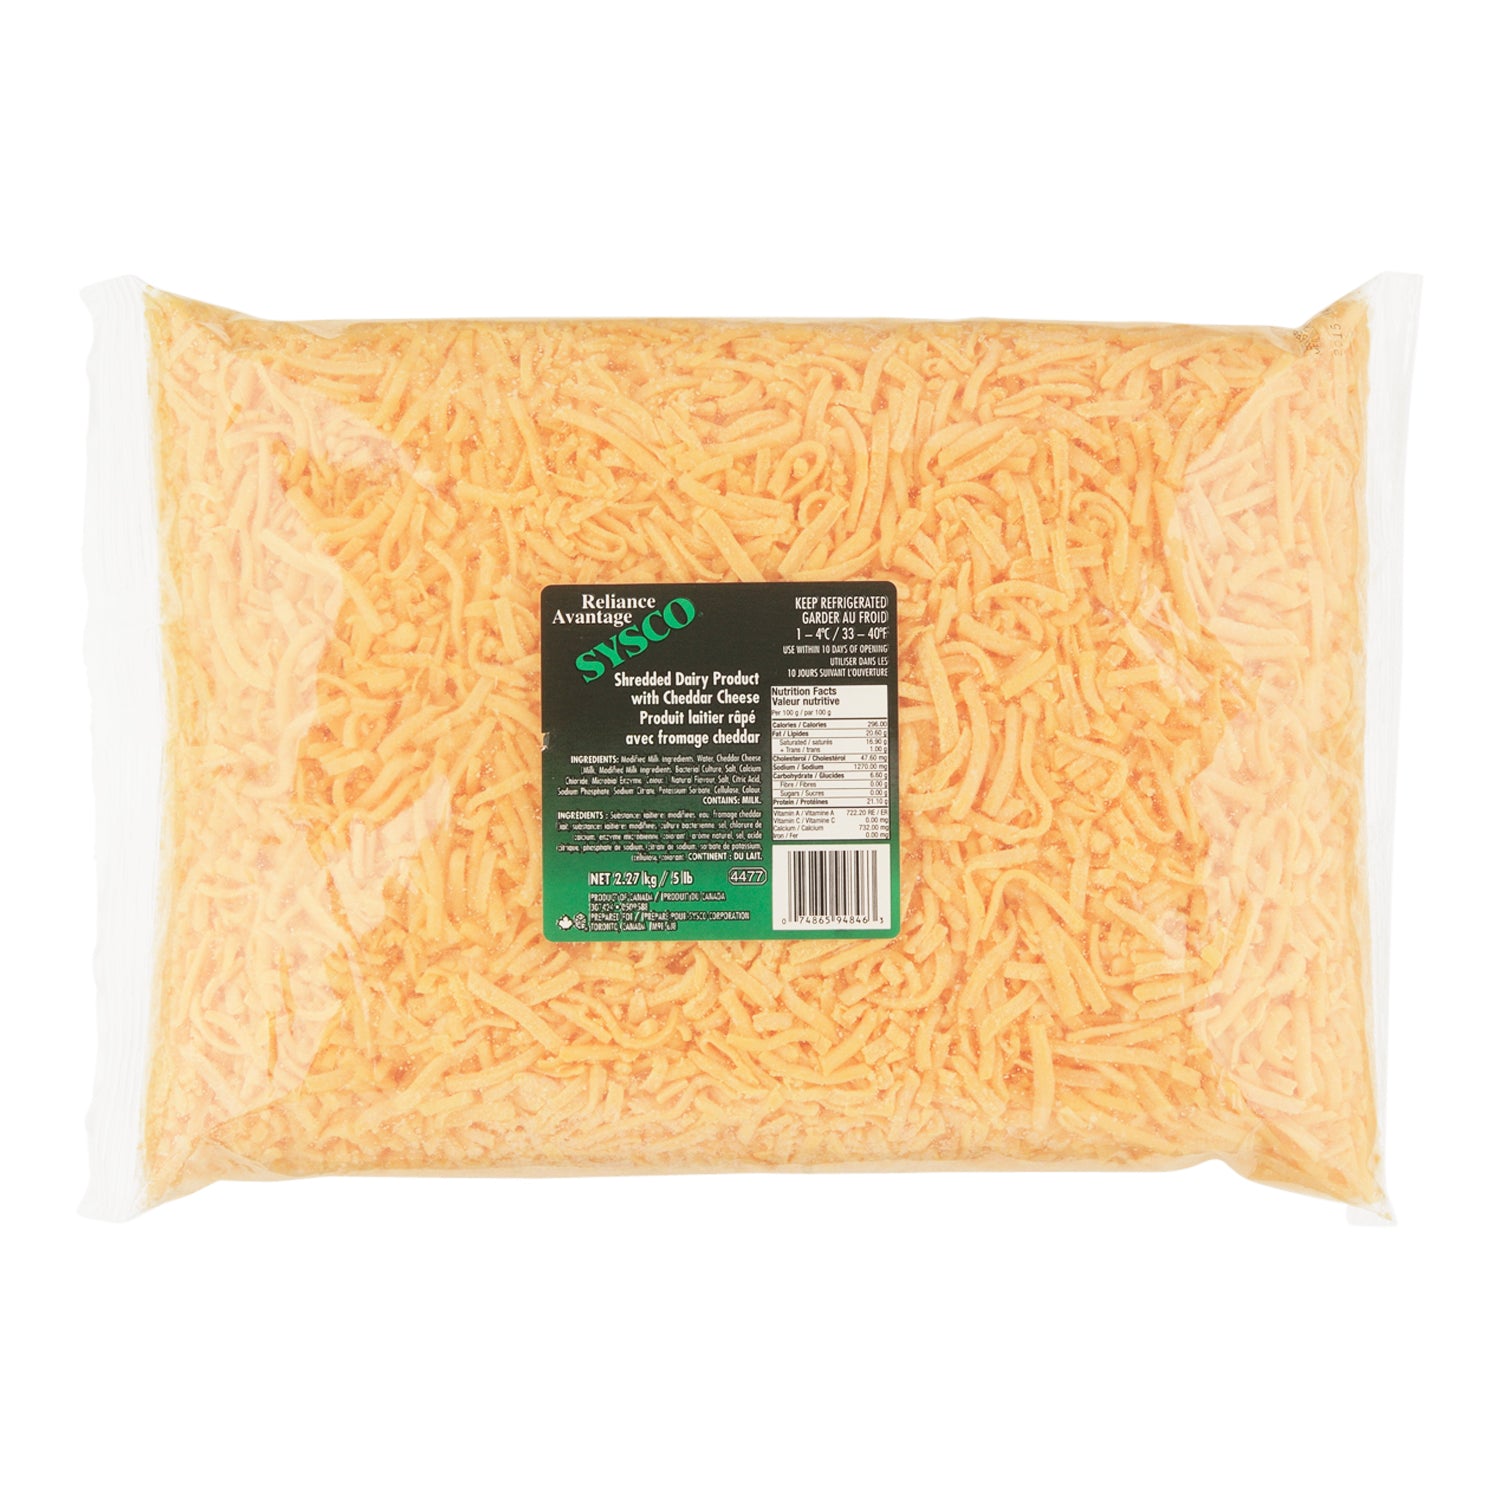 Sysco Reliance Shredded Cheese Cheddar 2x2.27kg [$1.32/100g]